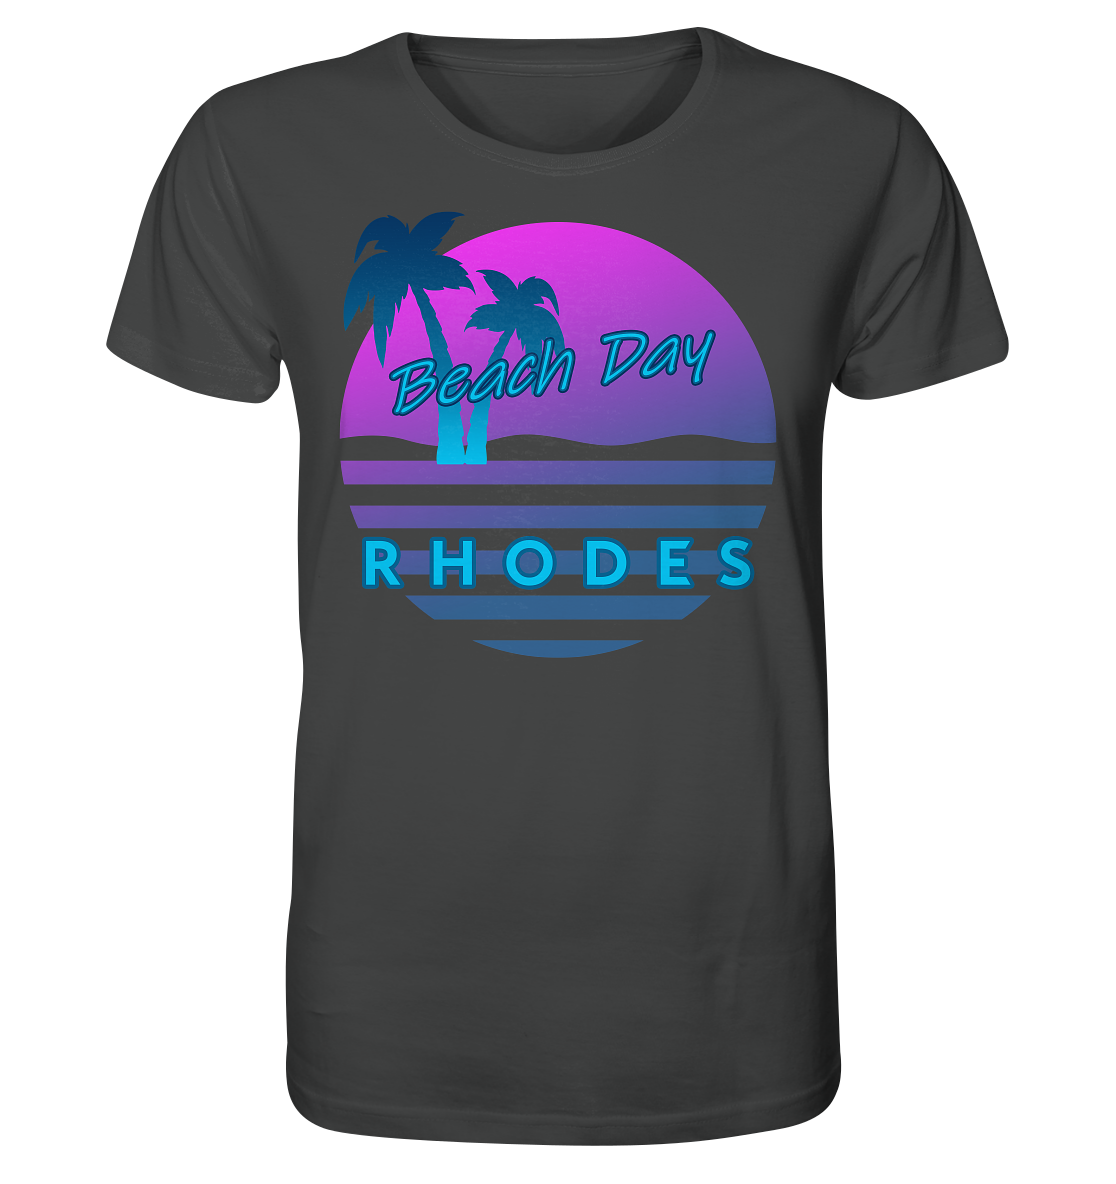 Beach Day Rhodes - Organic Shirt